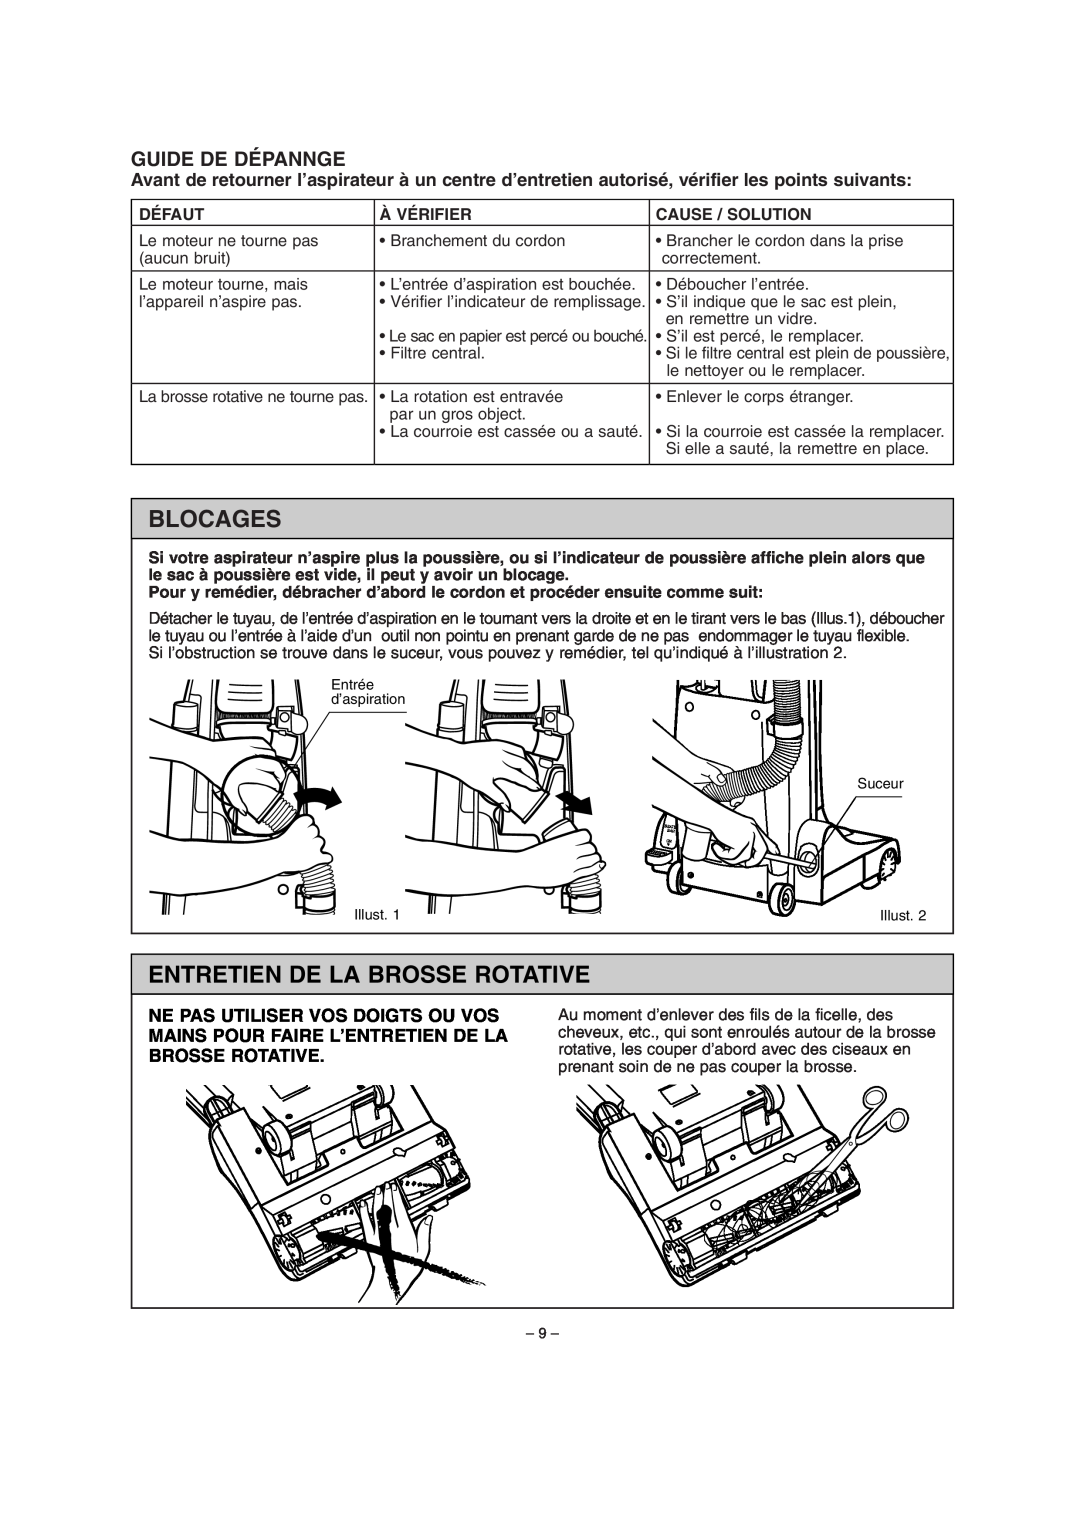 Miele S179i important safety instructions Blocages, Entretien De La Brosse Rotative, Guide De Dépannge 